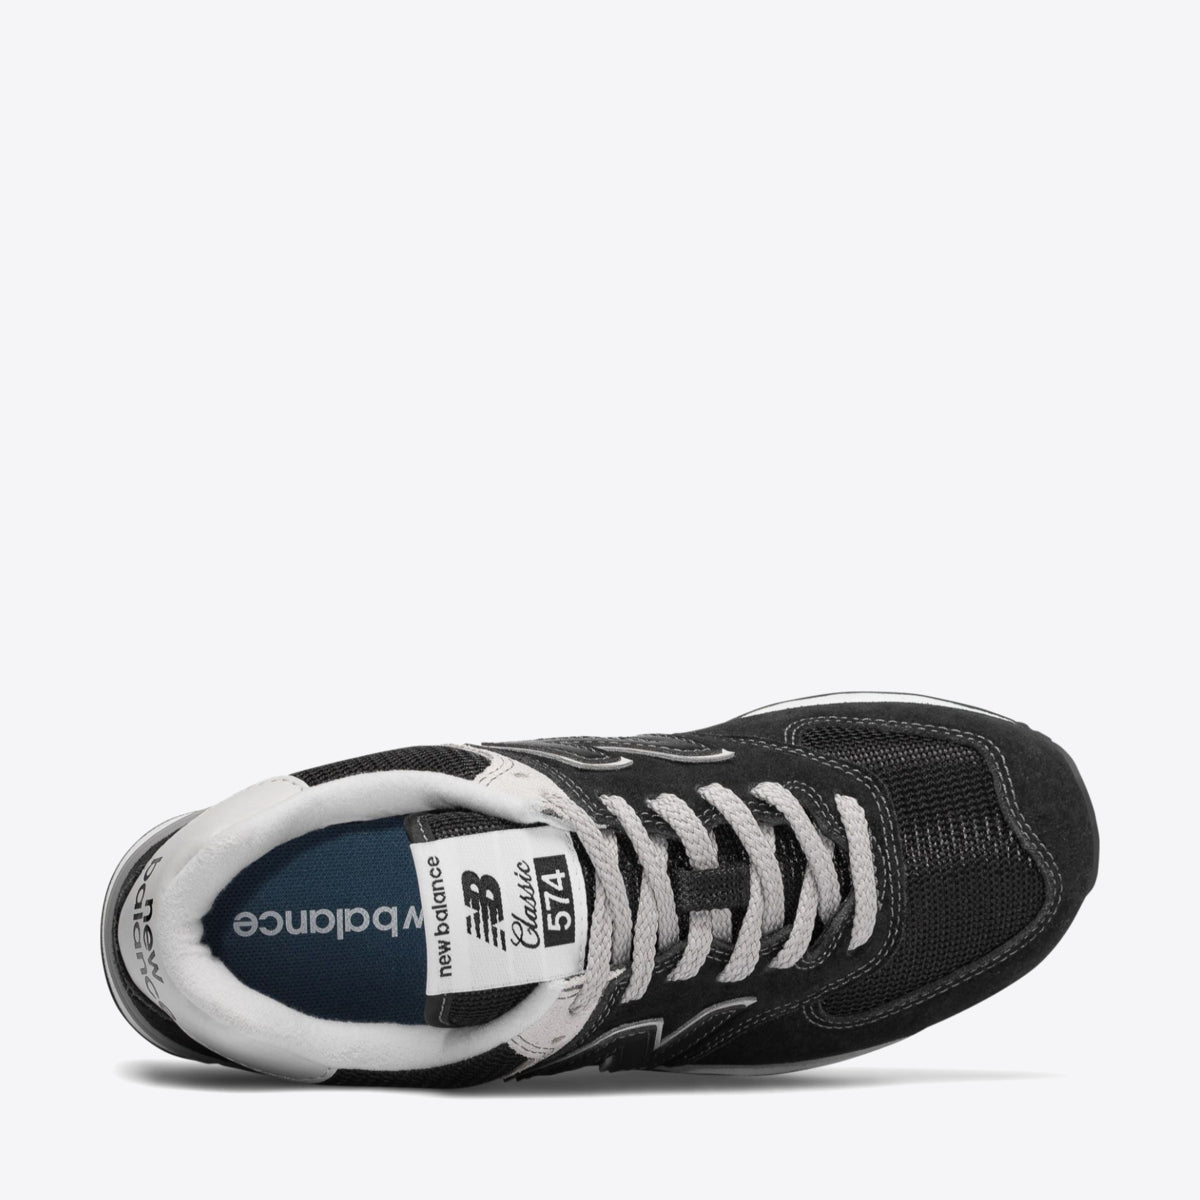  574 V3 Men's Sneaker Black/White